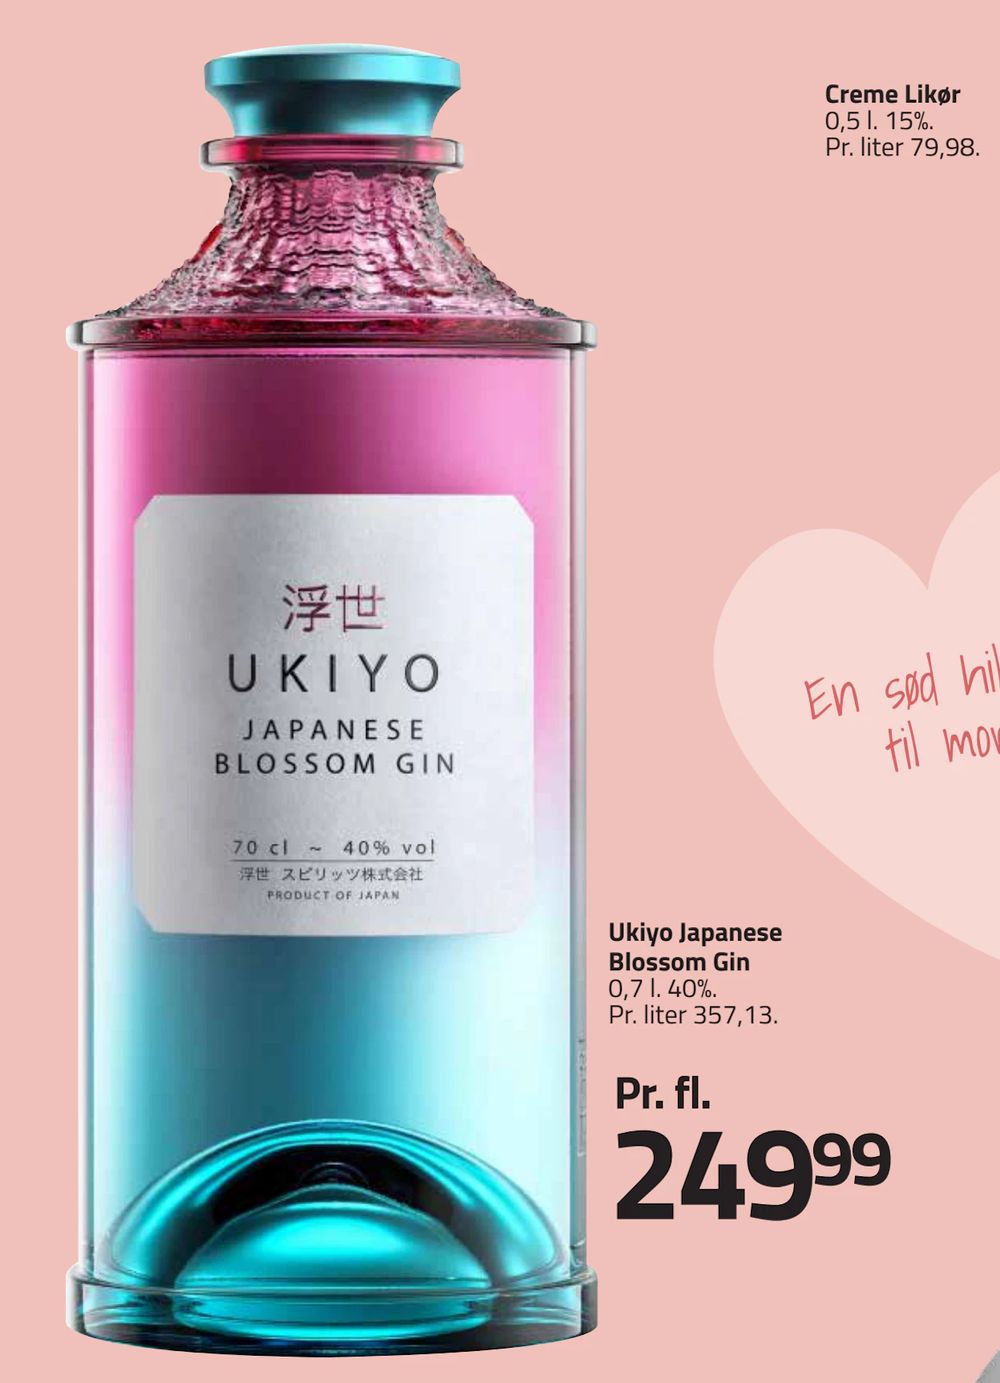 Tilbud på Ukiyo Japanese Blossom Gin fra Fleggaard til 249,99 kr.